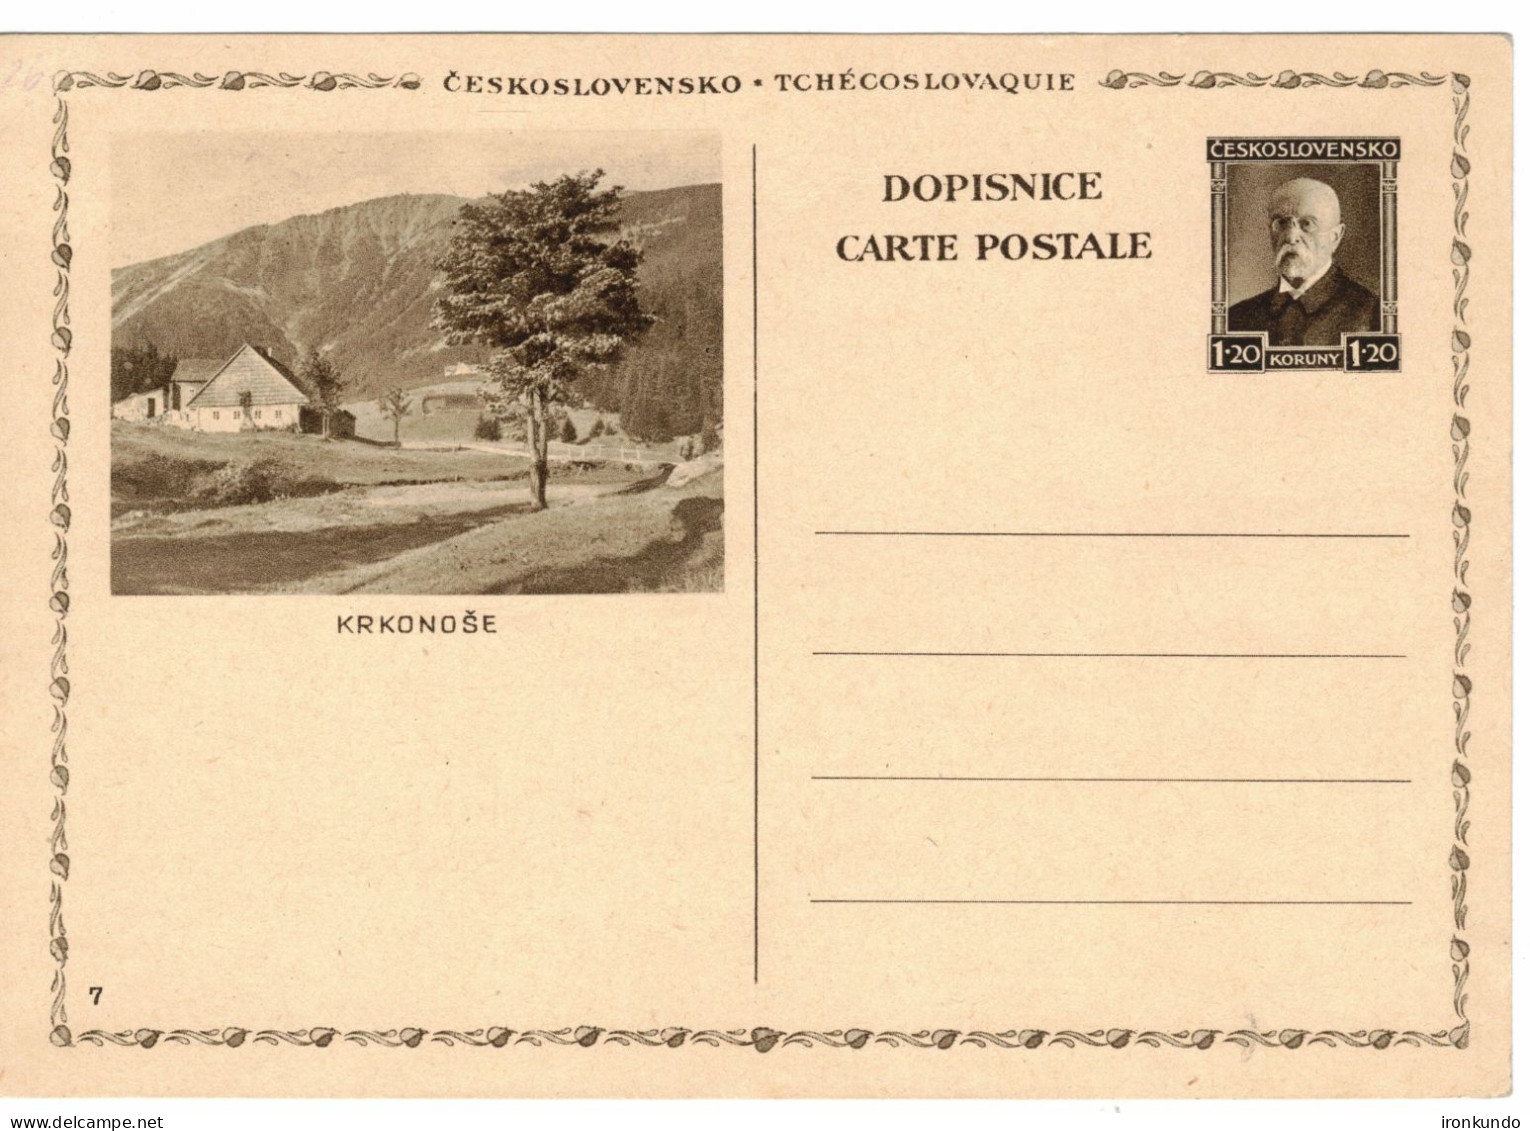 Czechoslovakia Illustrated Postal Stationery Card Krkonoše - CDV46/7 - Postcards